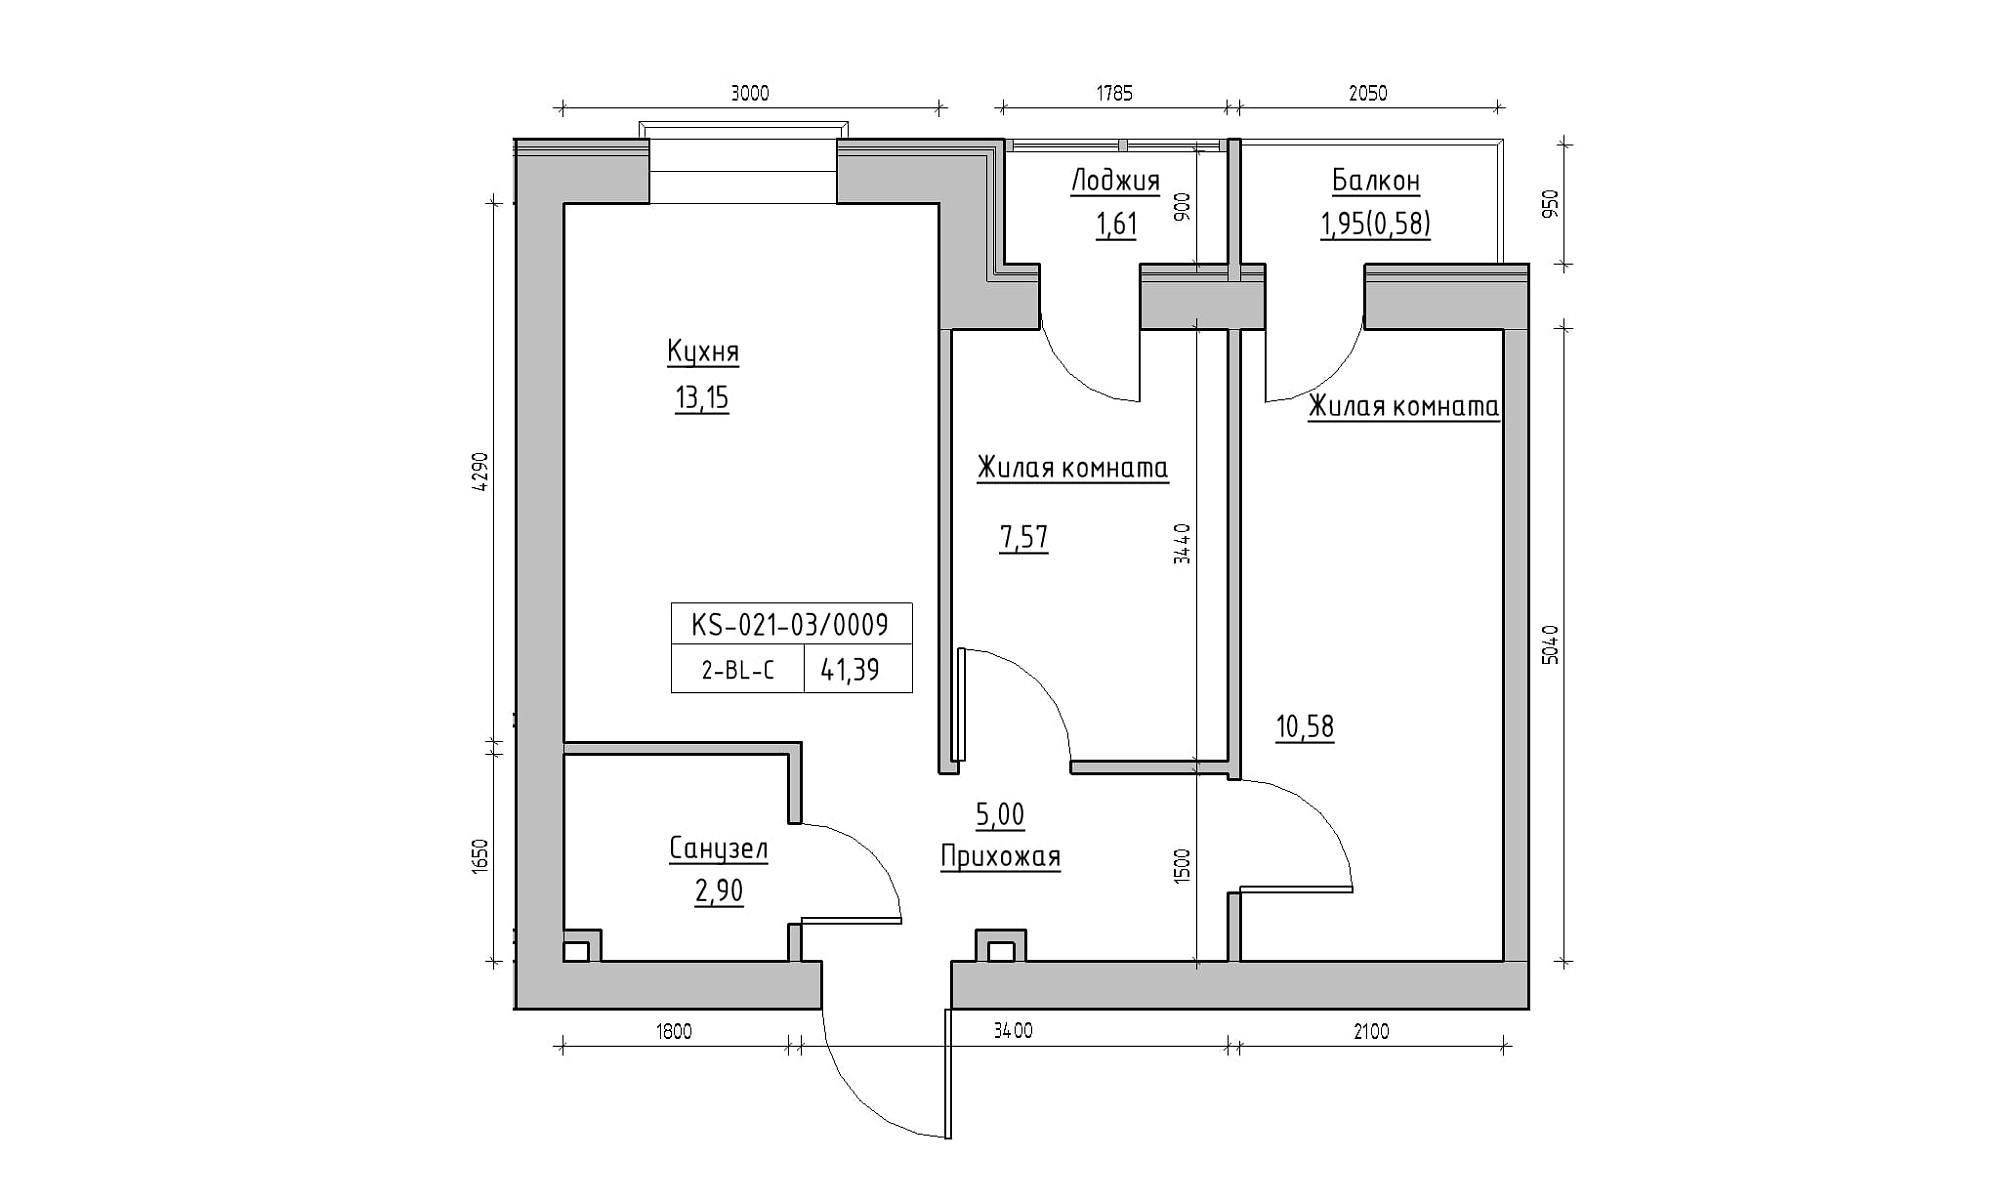 Планування 2-к квартира площею 41.39м2, KS-021-03/0009.